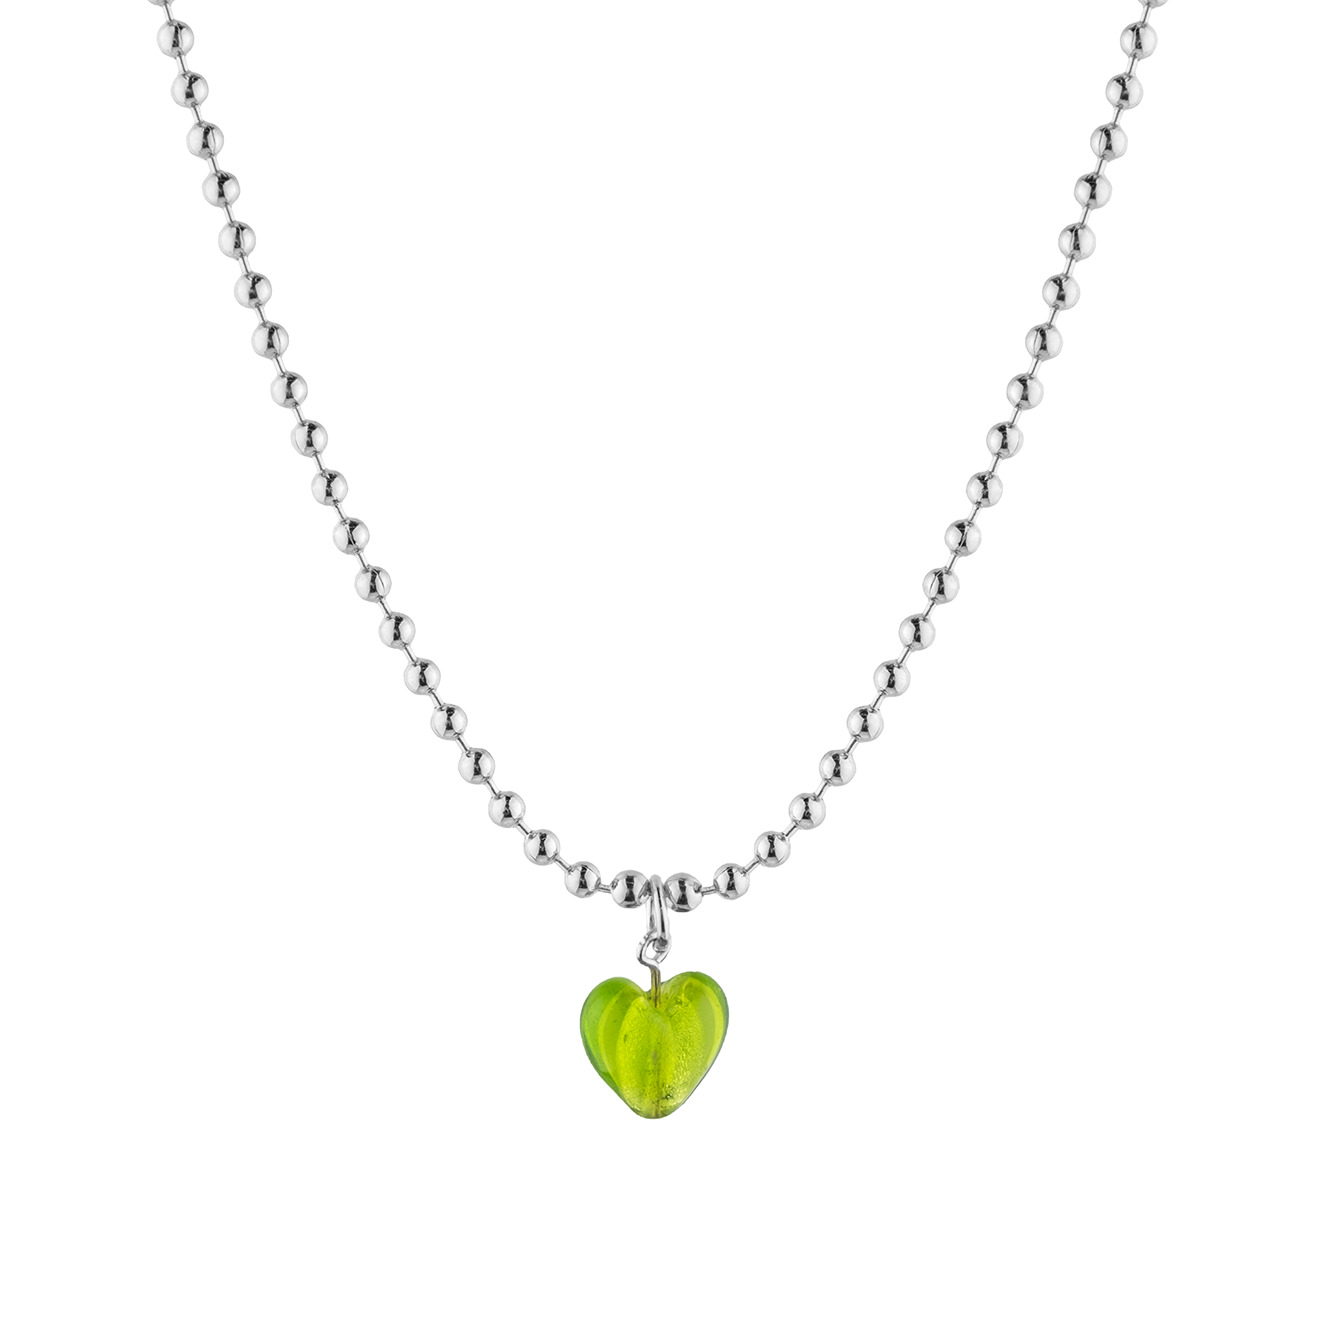 Aqua Серебристая цепь из шариков с зеленым сердечком